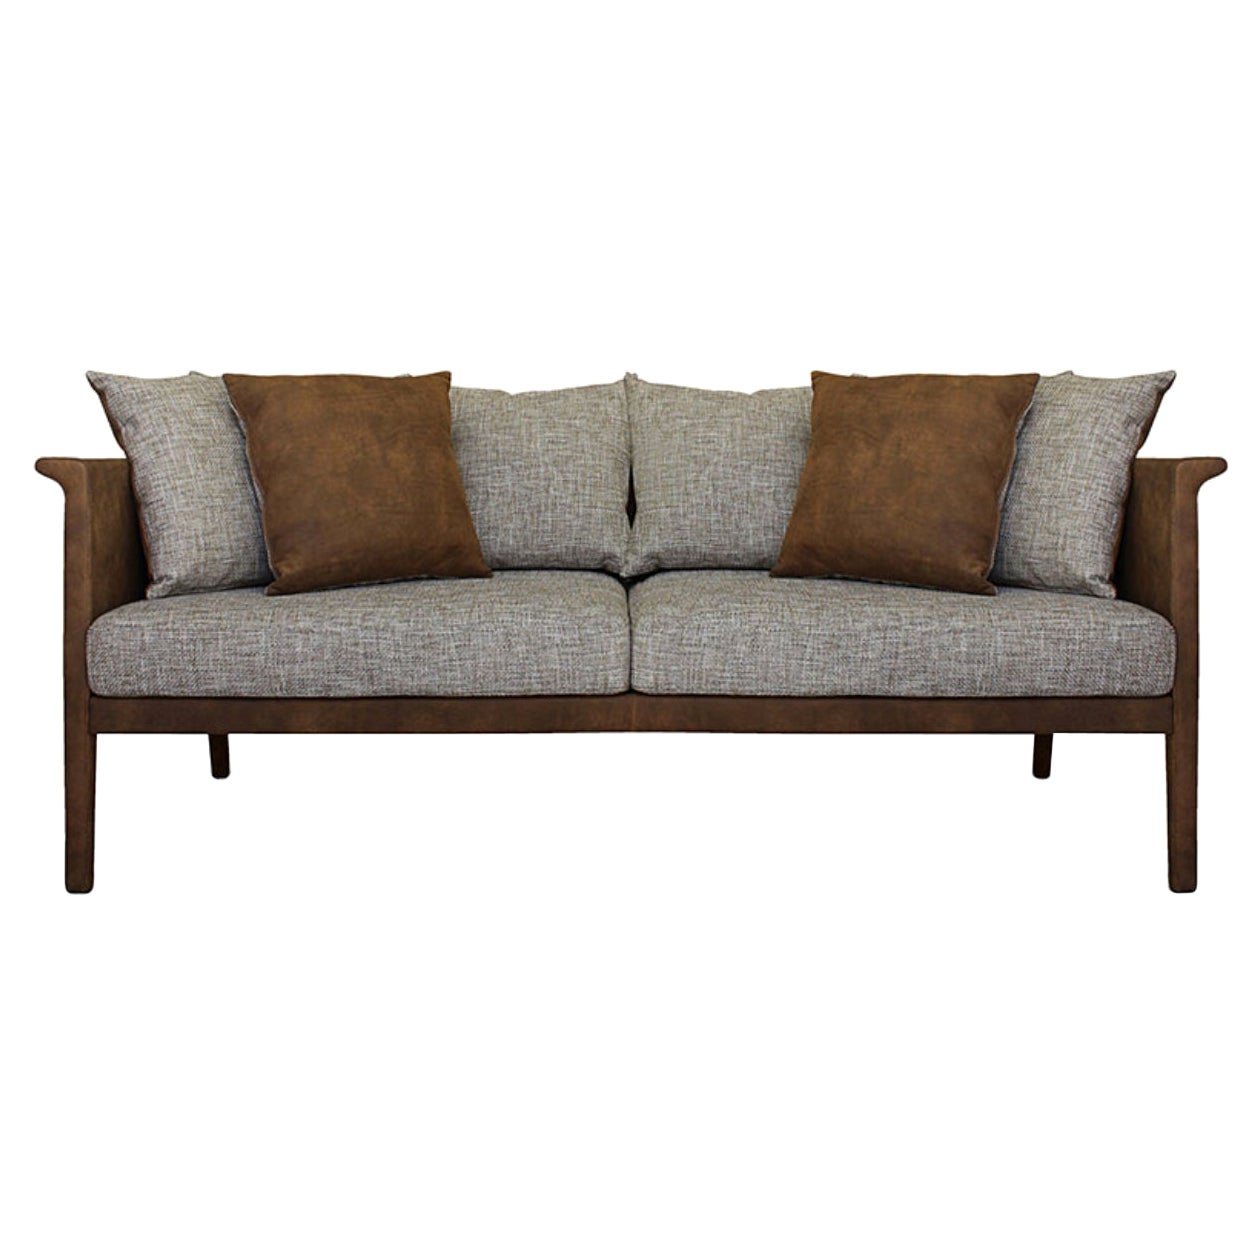 Unique Franz Sofa by Collector